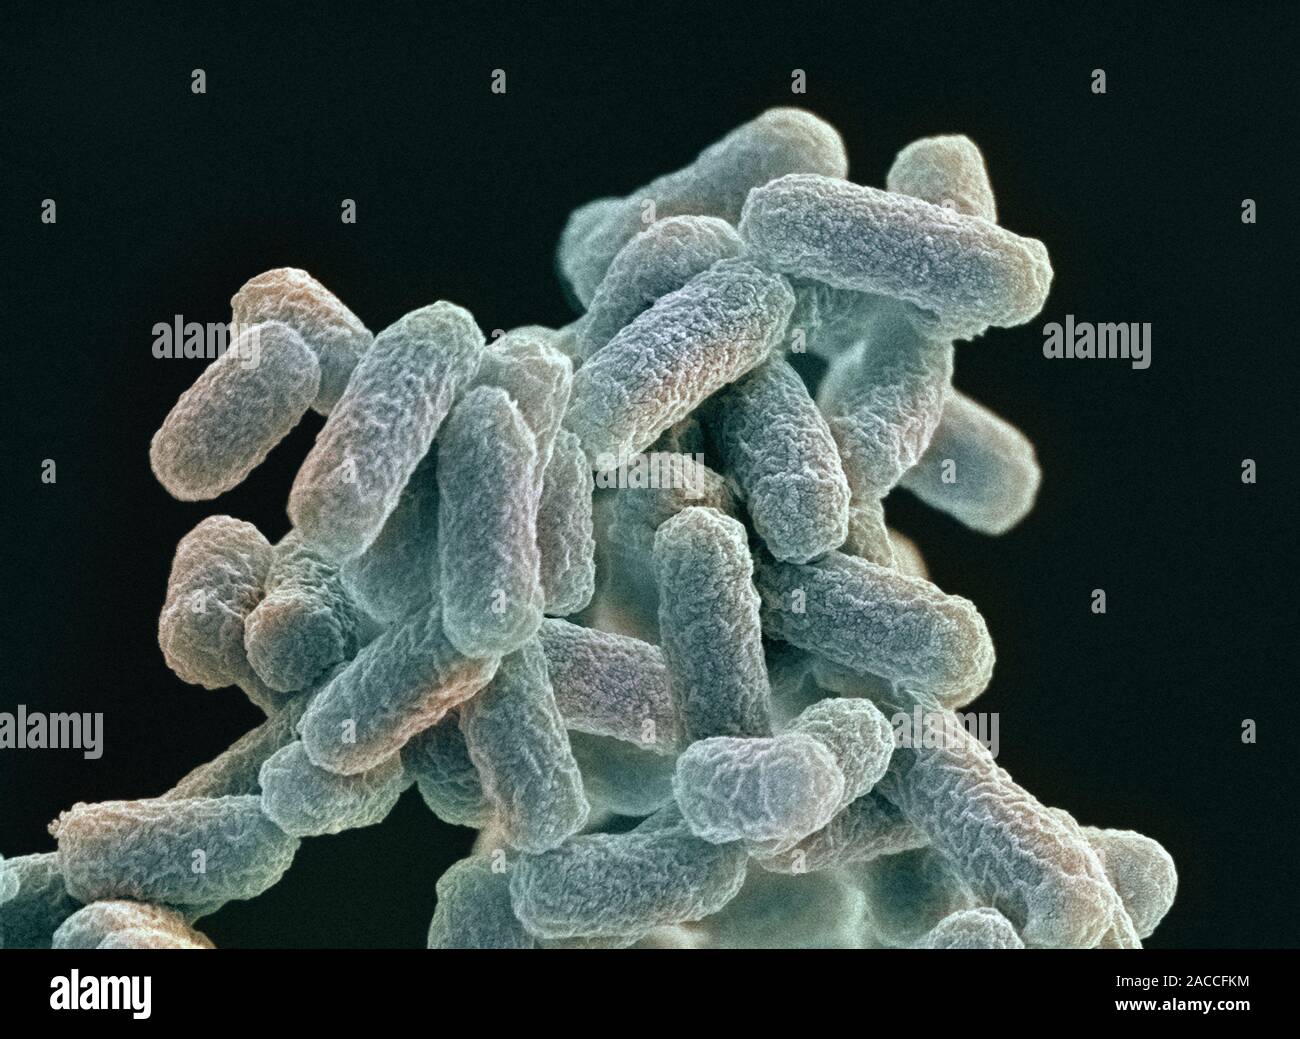 Микроорганизмы кишечная палочка